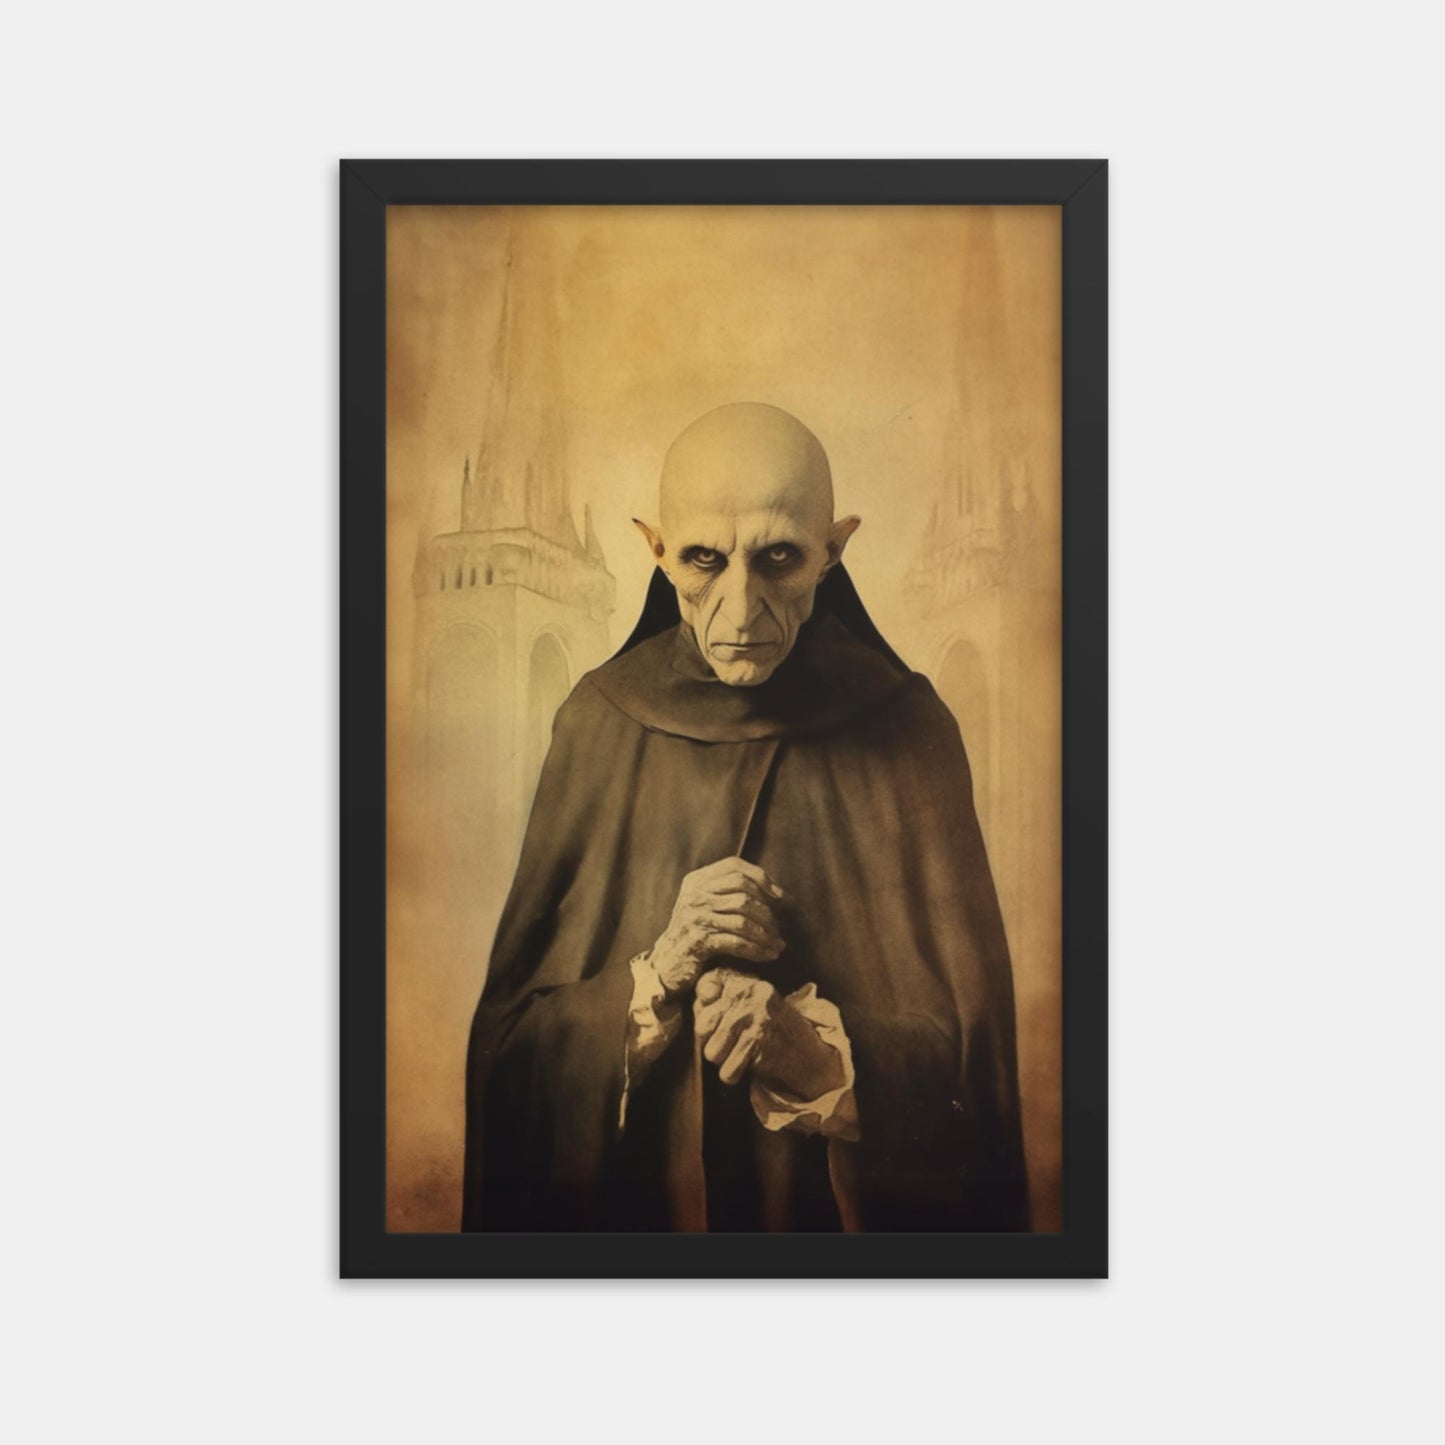 Nosferatu, brings the plague. Tribute Framed Print